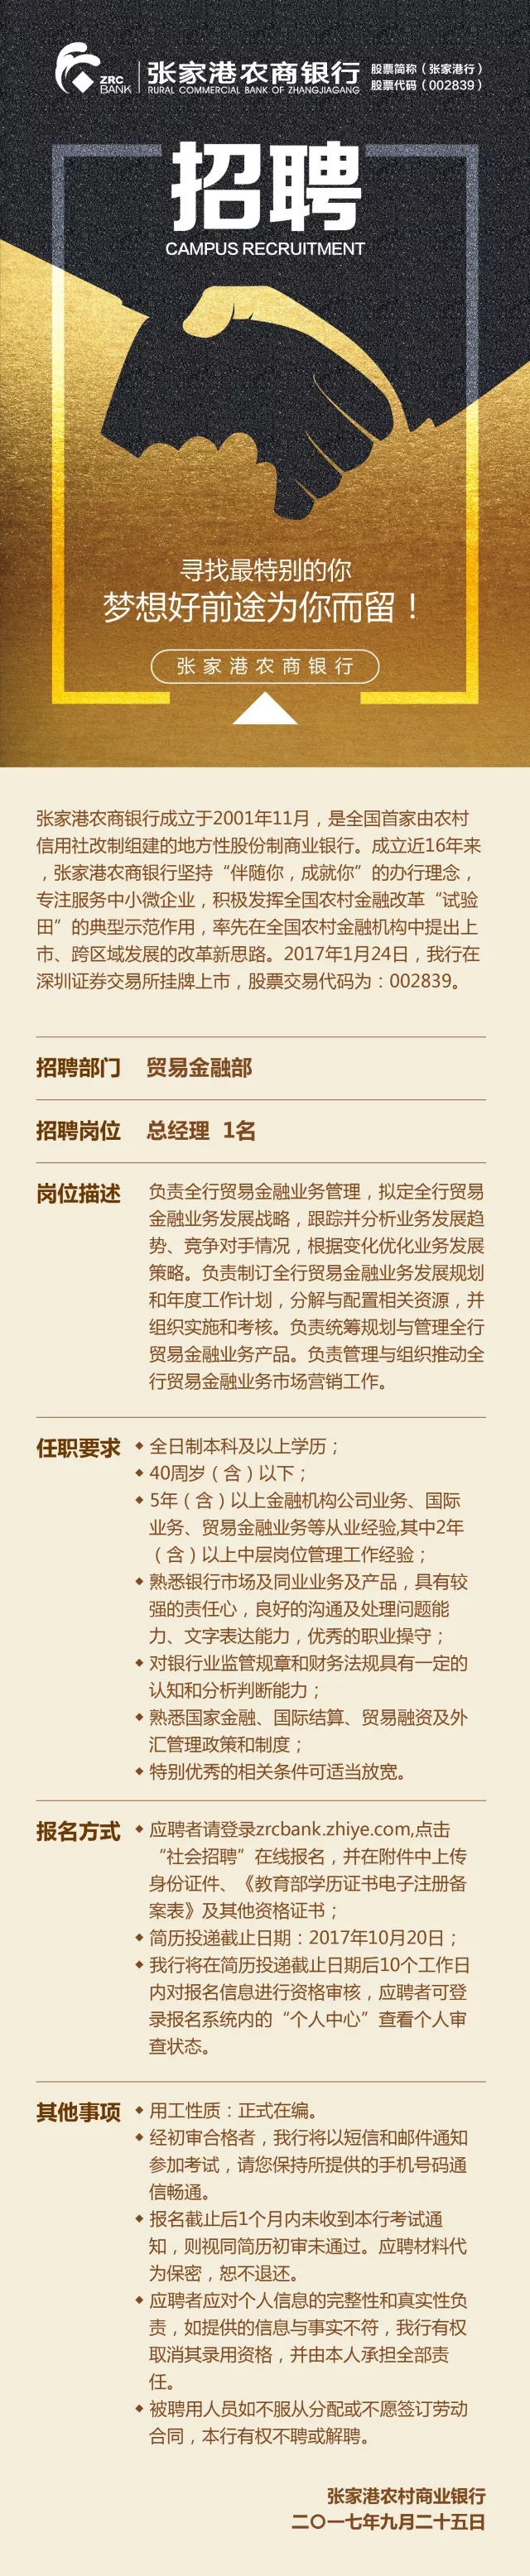 张家港农商行贸易金融部总经理招聘公告